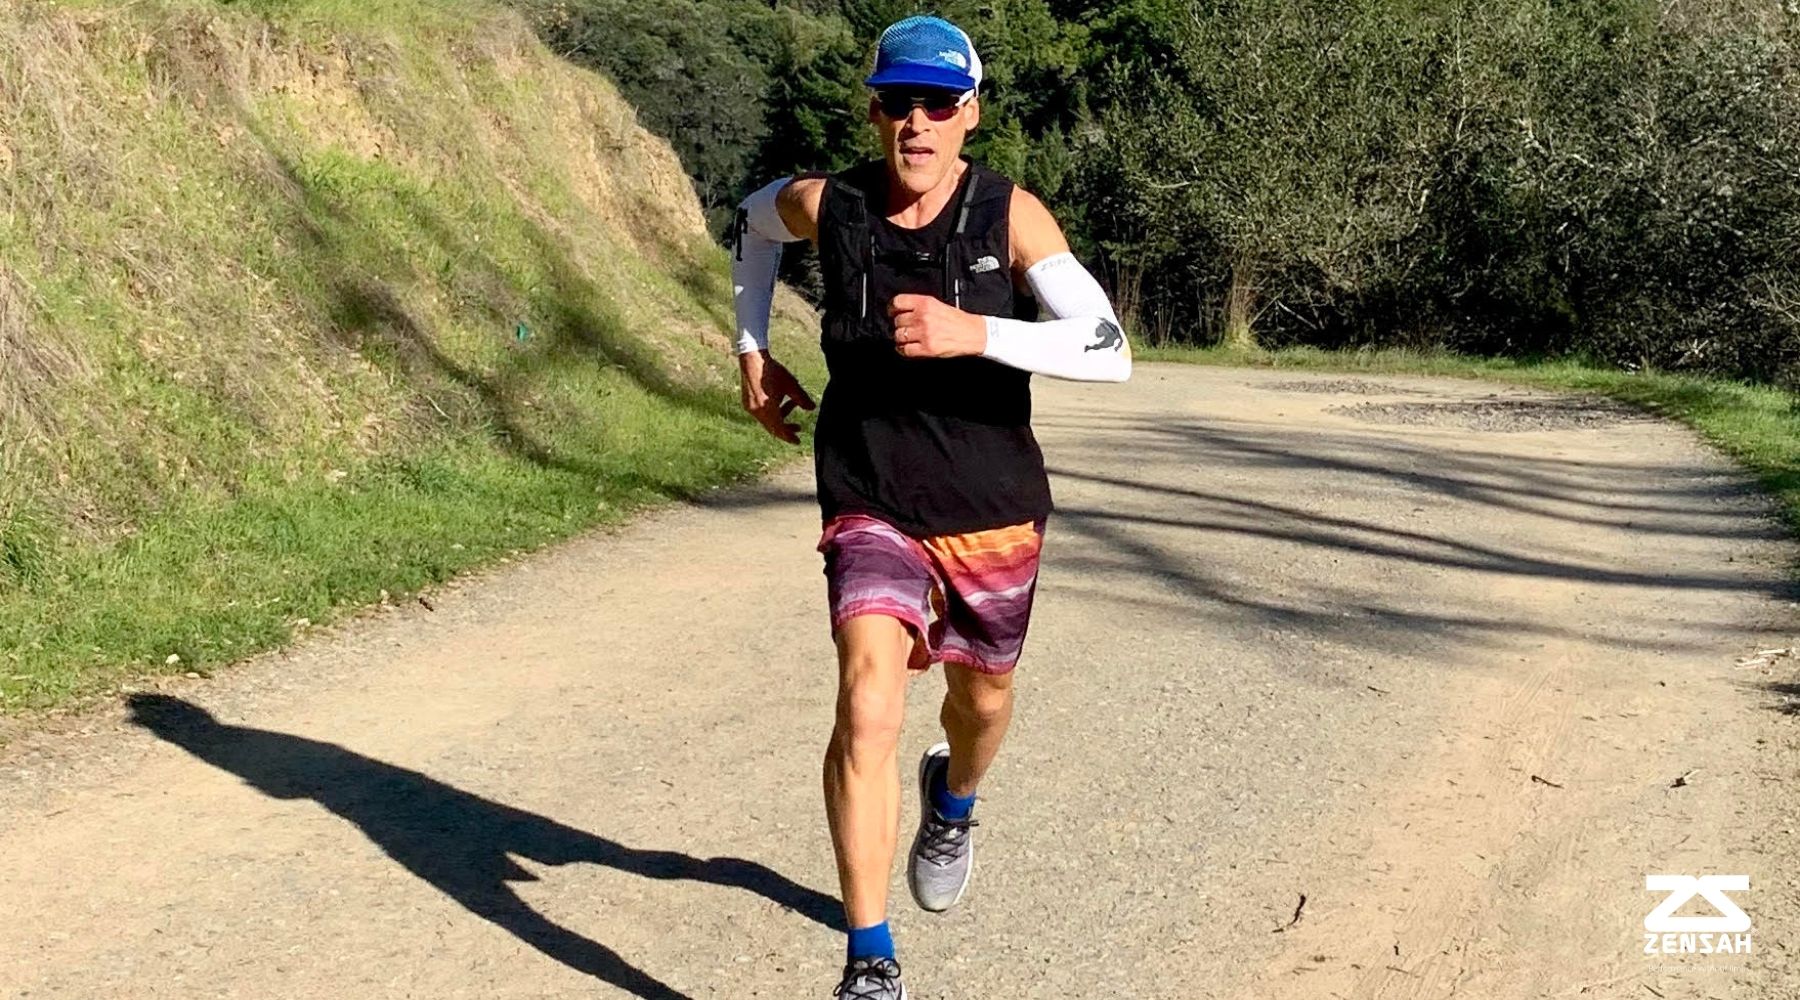 Ultramarathoner Dean Karnazes running with Zensah White Sun Sleeves on